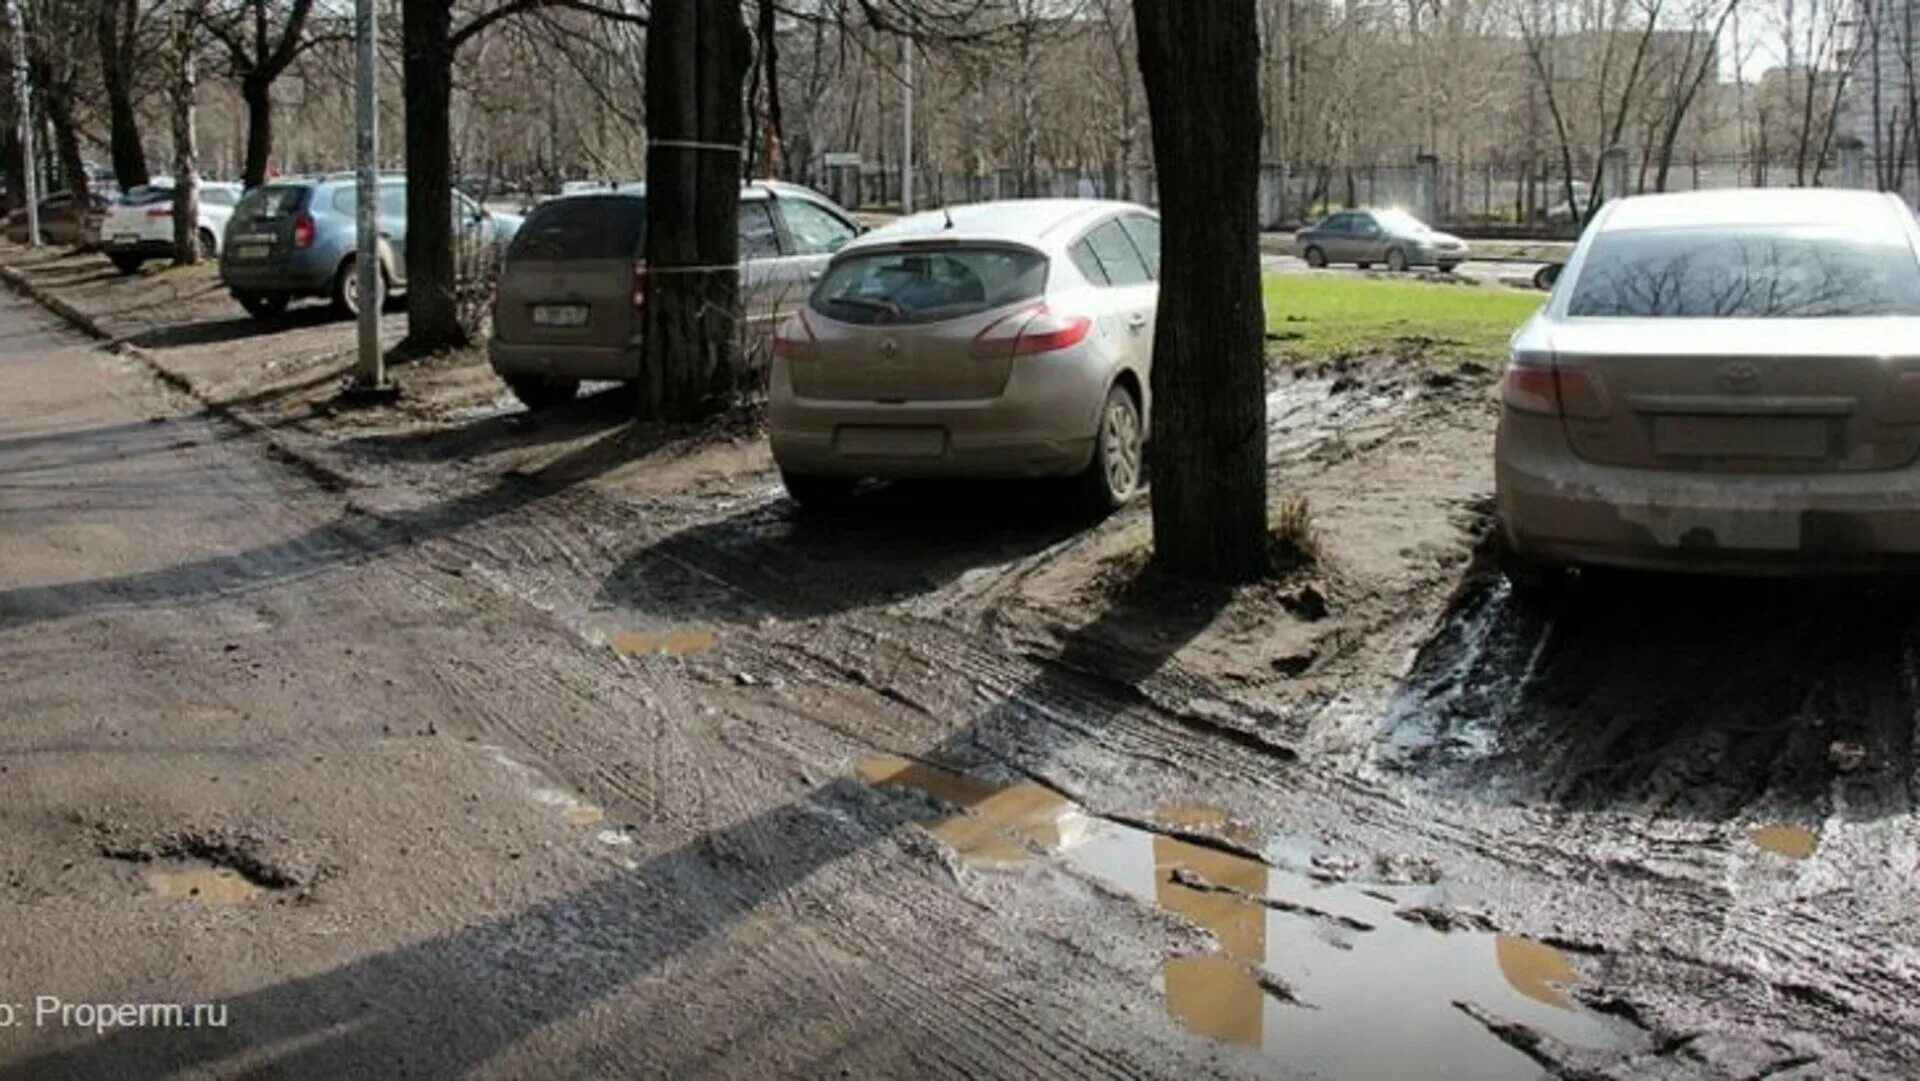 Машина на тротуаре. Грязь на тротуаре. Парковка на газоне грязь. Парковка на тротуаре во дворе. Куда жаловаться на парковку на тротуаре